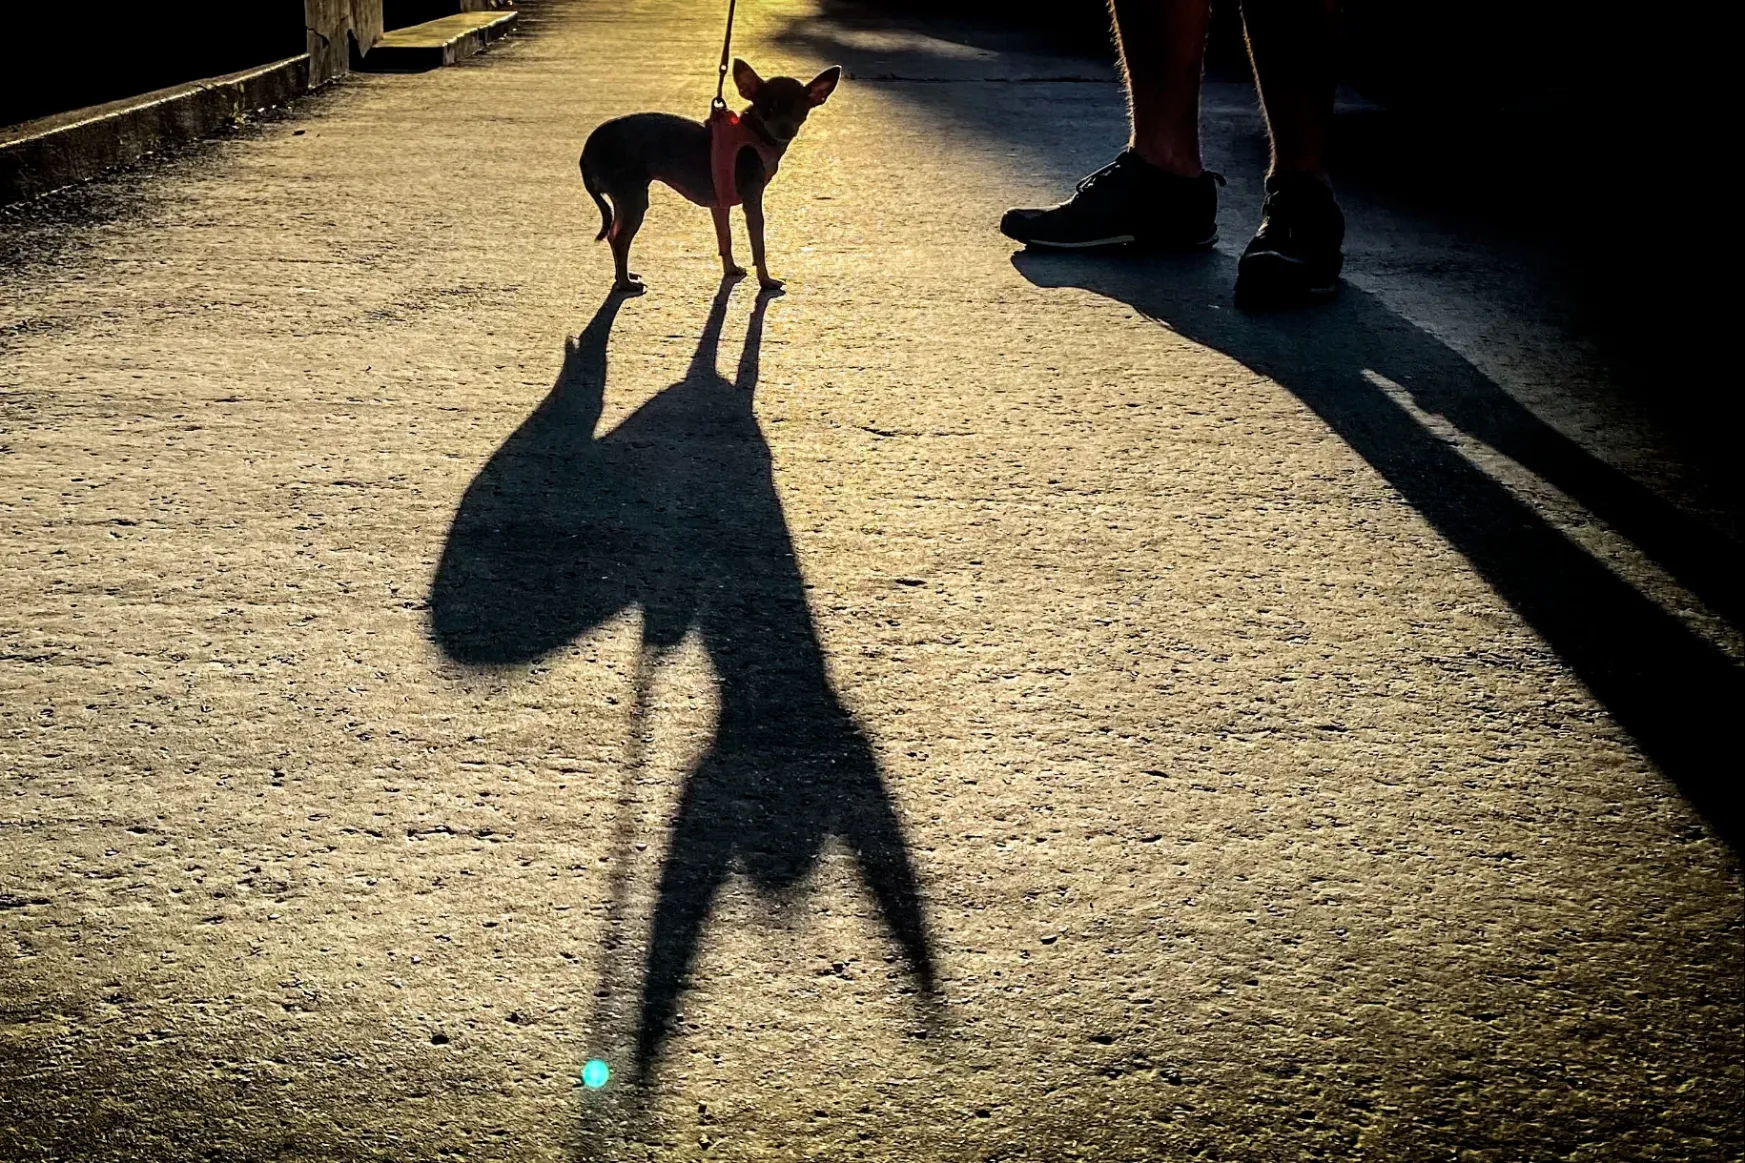 Kaki, futtatók, kutyanevelés – megnéztük, mit lehetne kezdeni a városi kutyatartással